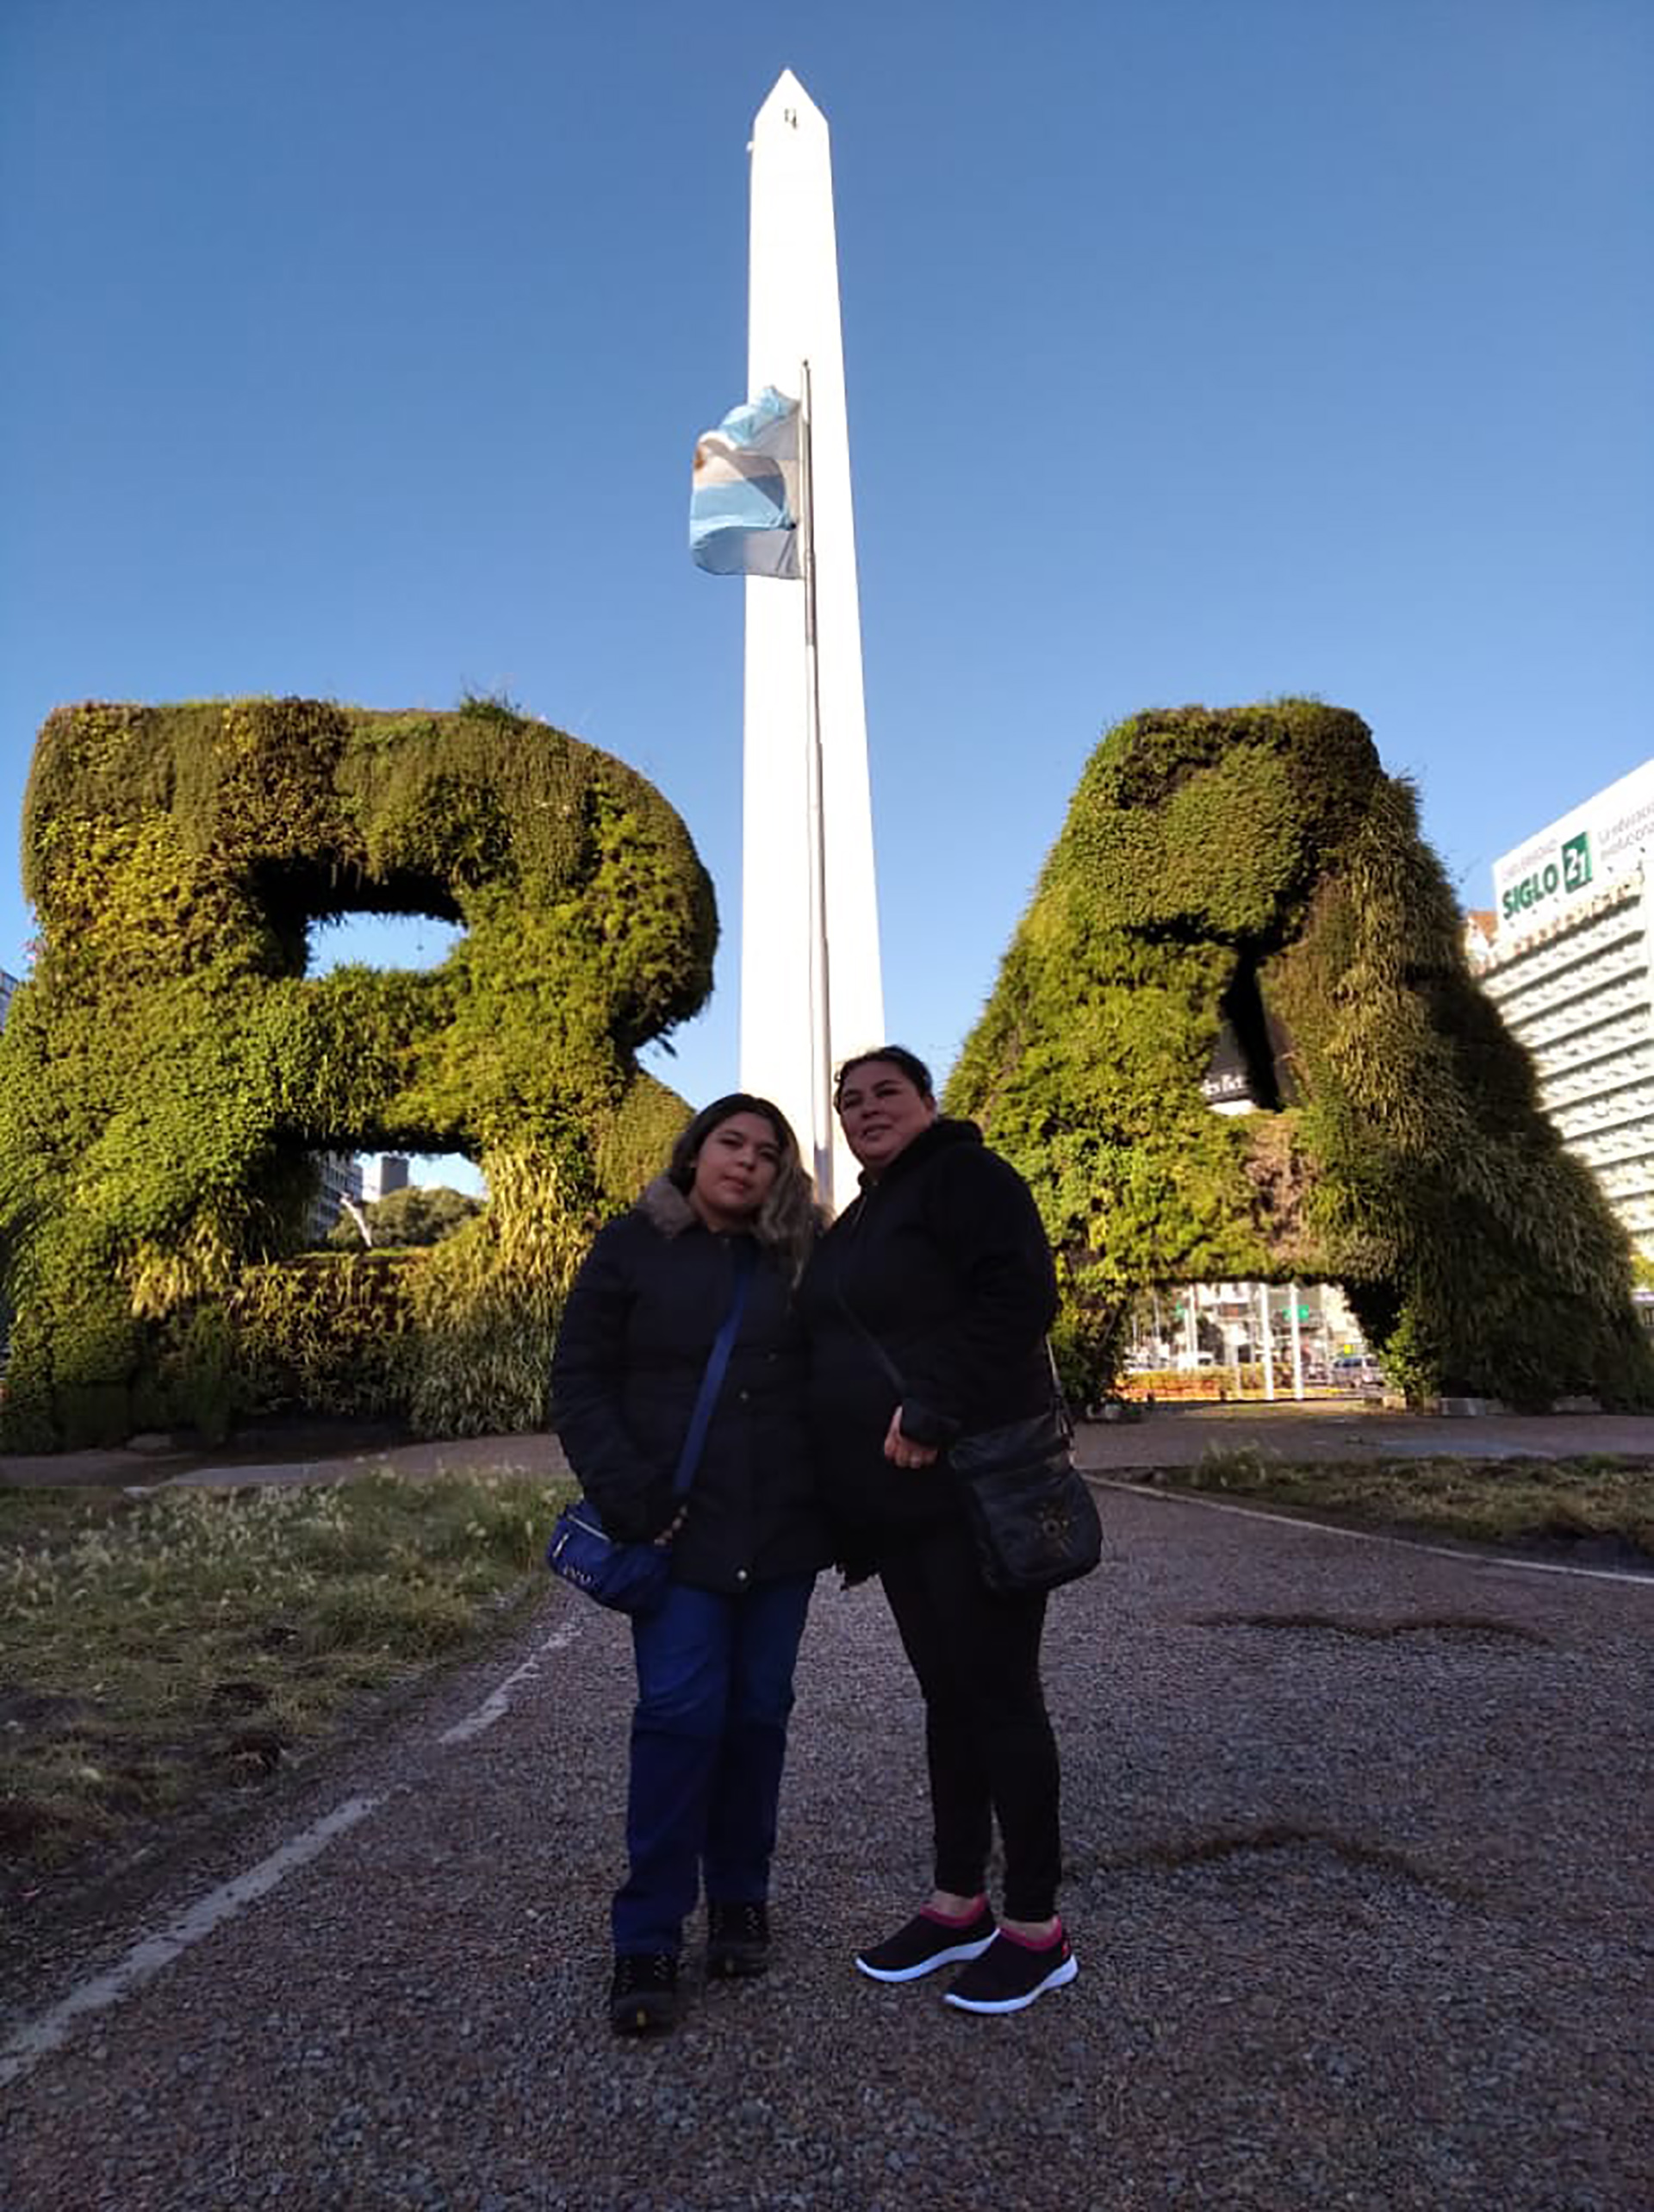 Paola y Rosa viajaron por primera vez a Buenos Aires invitadas por Benito Fernández. Y conocieron el obelisco